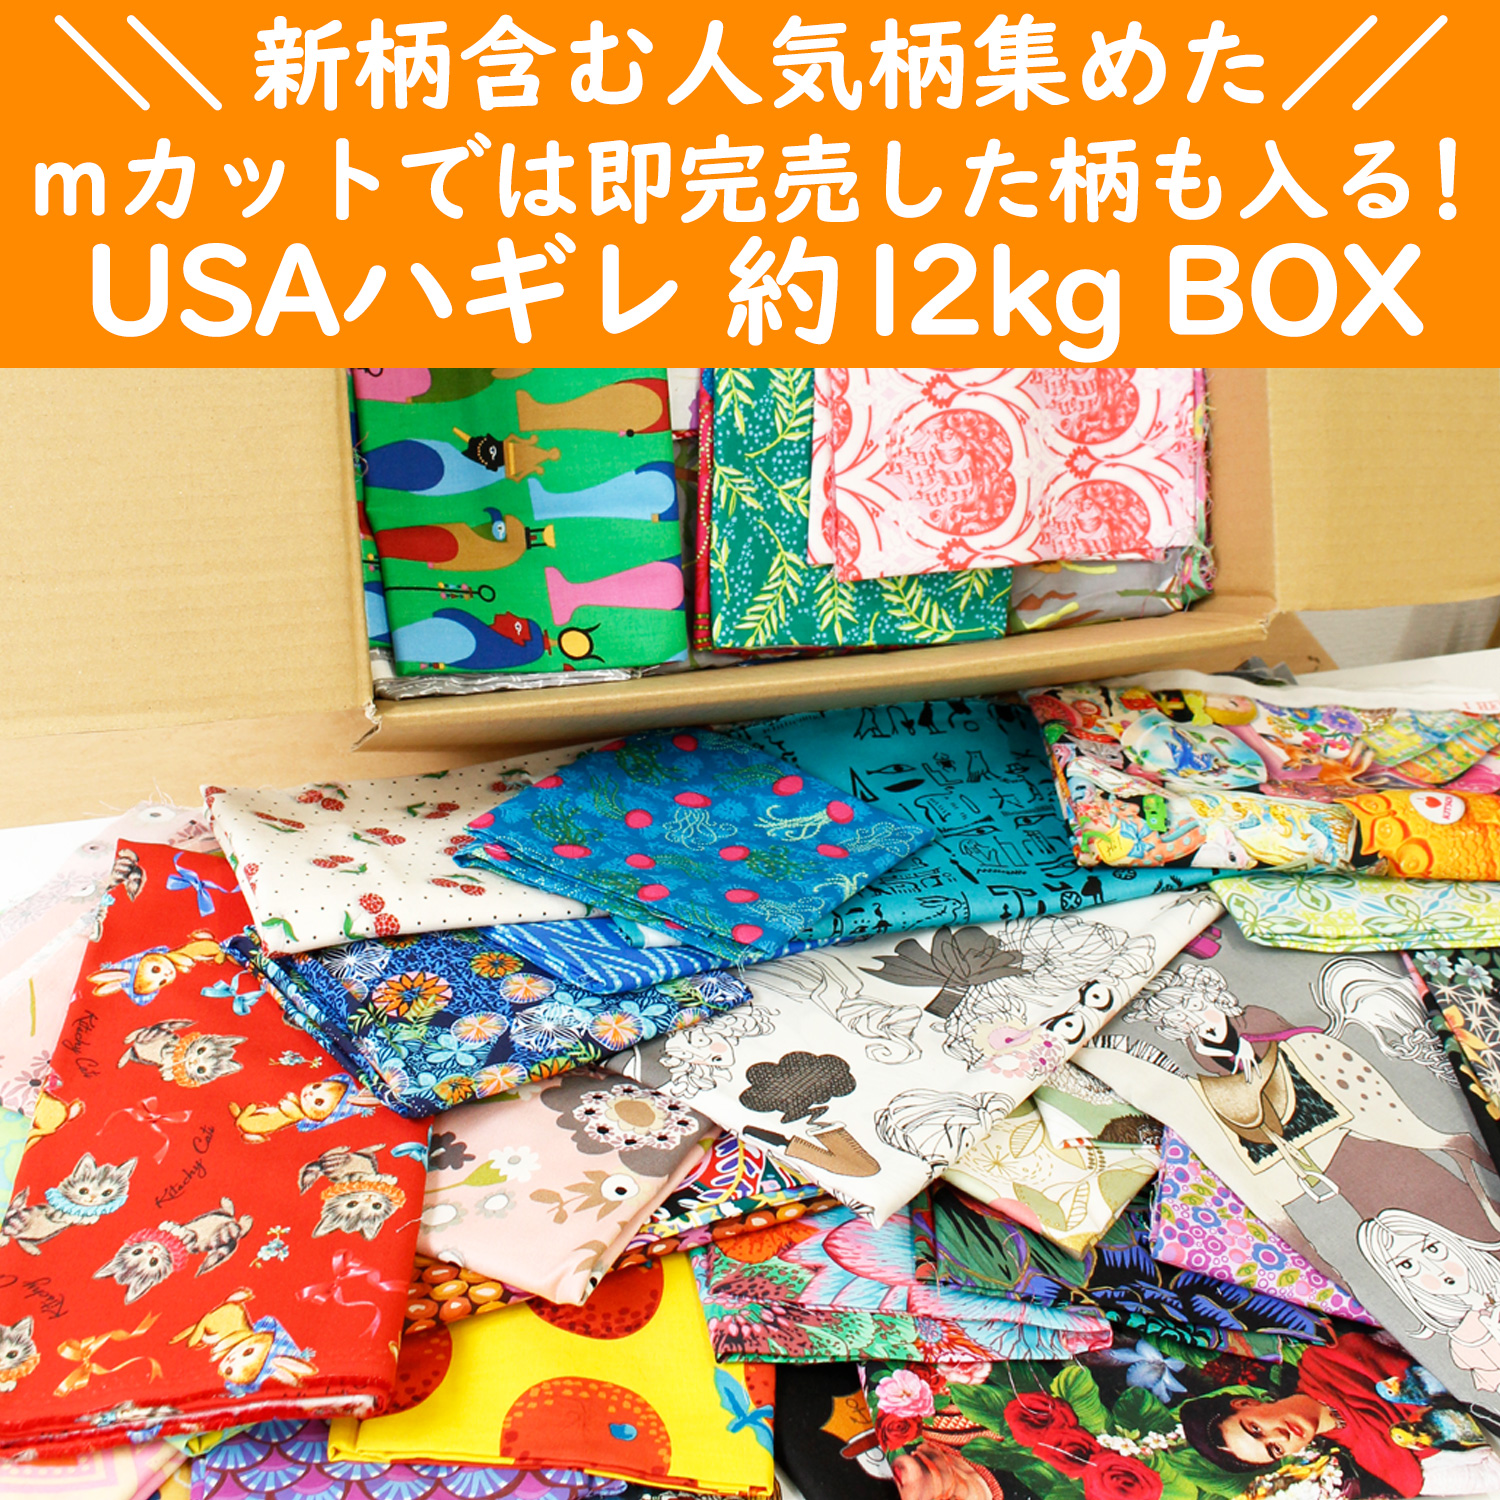 【限定3セット】OR-SET33000 USAプレミアムハギレ約12kgBOX (箱)